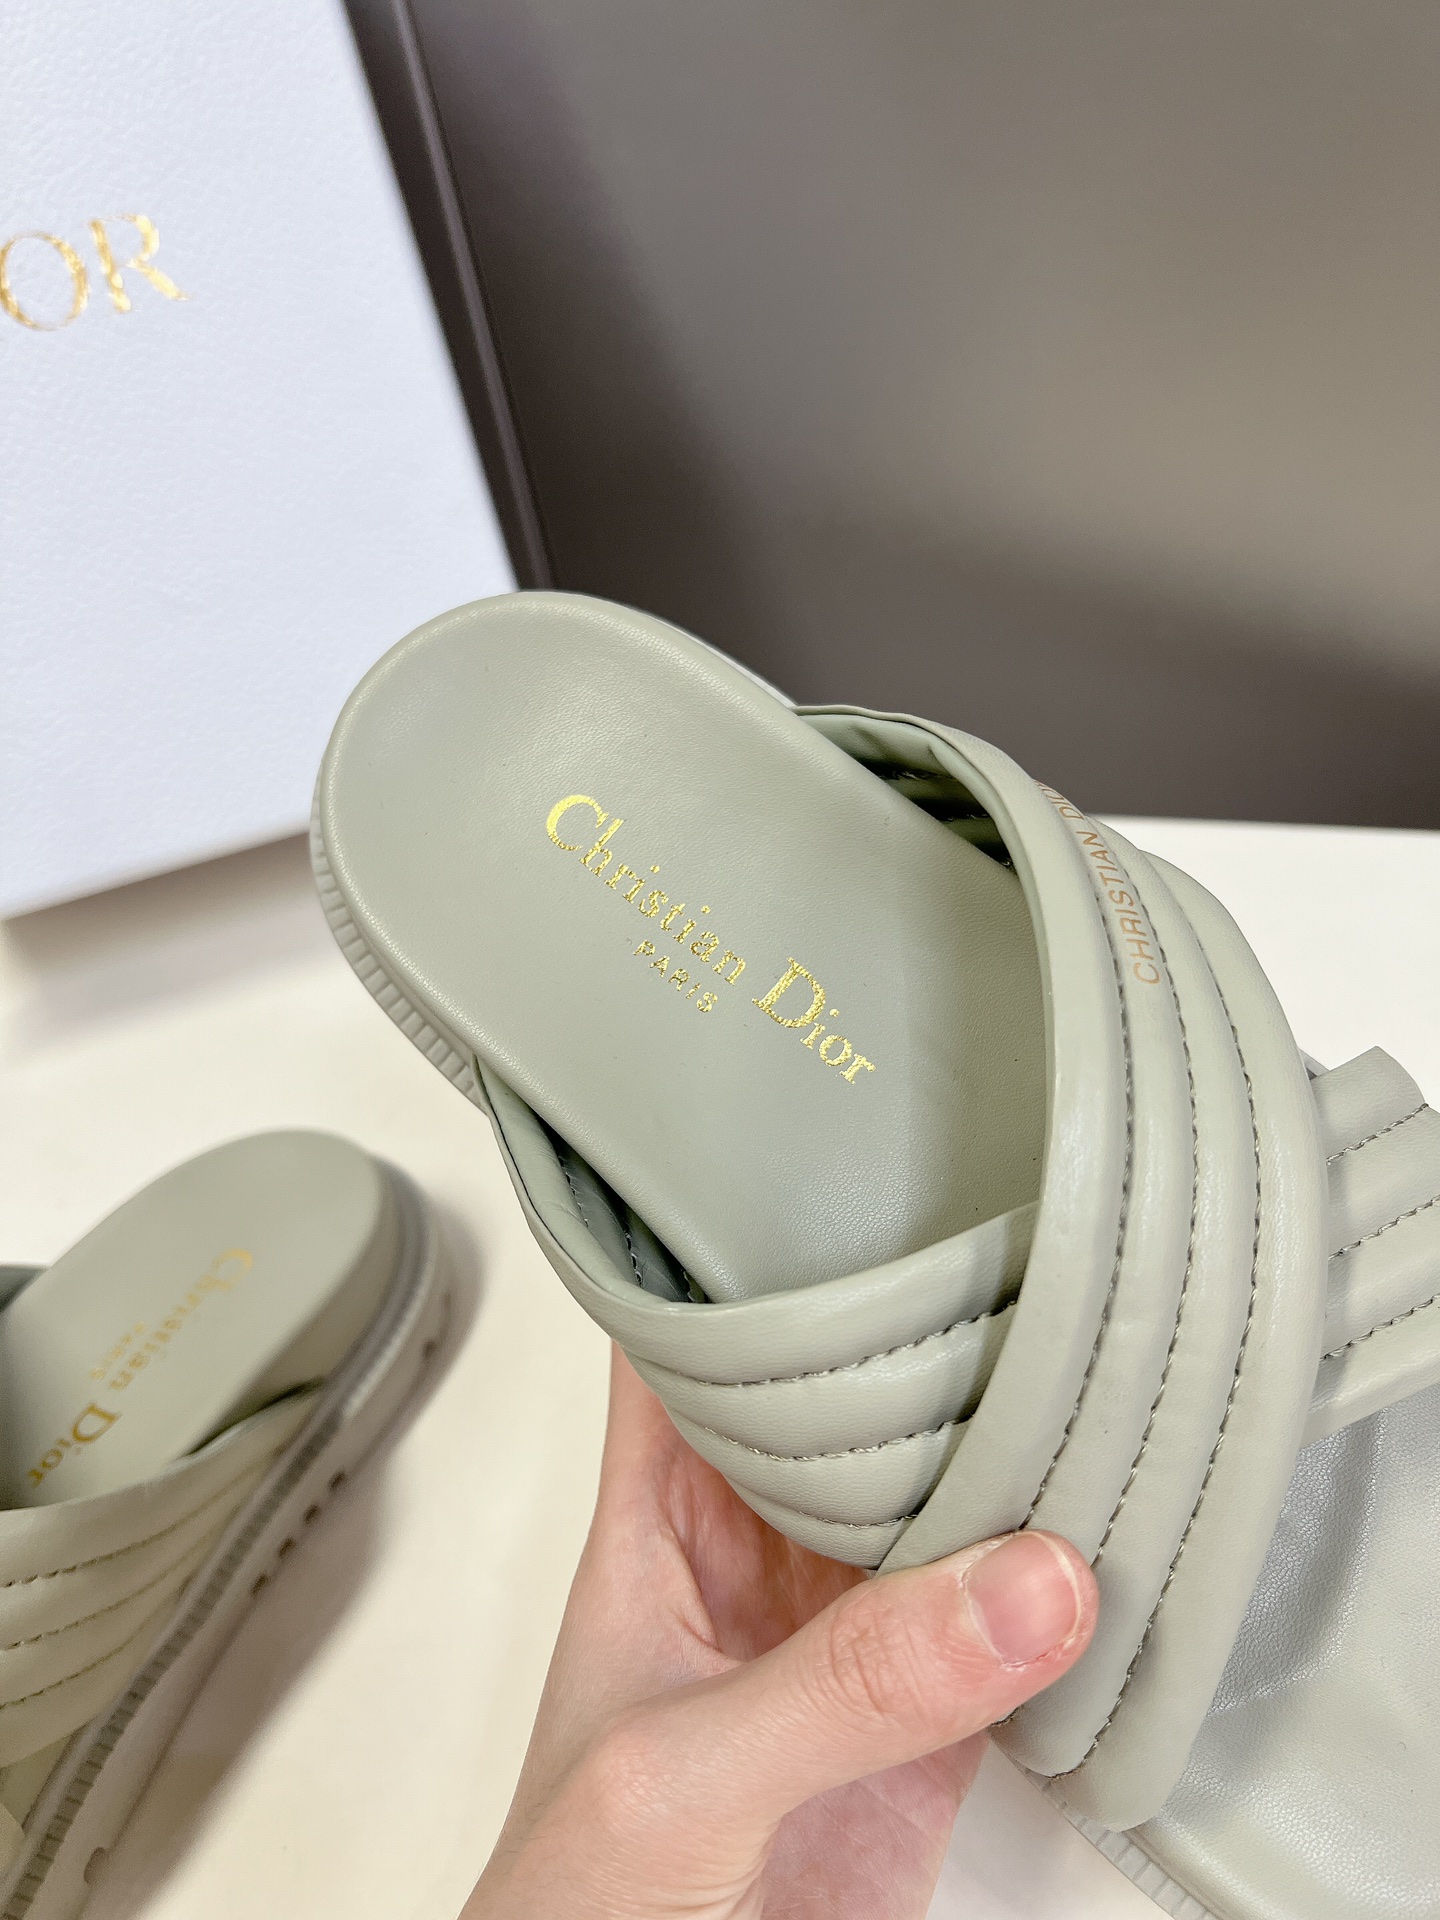 Dior迪奥春夏最新款凉鞋超多明星网红种草经典的版型设计上迪奥LOGO丝印点缀超好看超百搭上脚非常柔软️